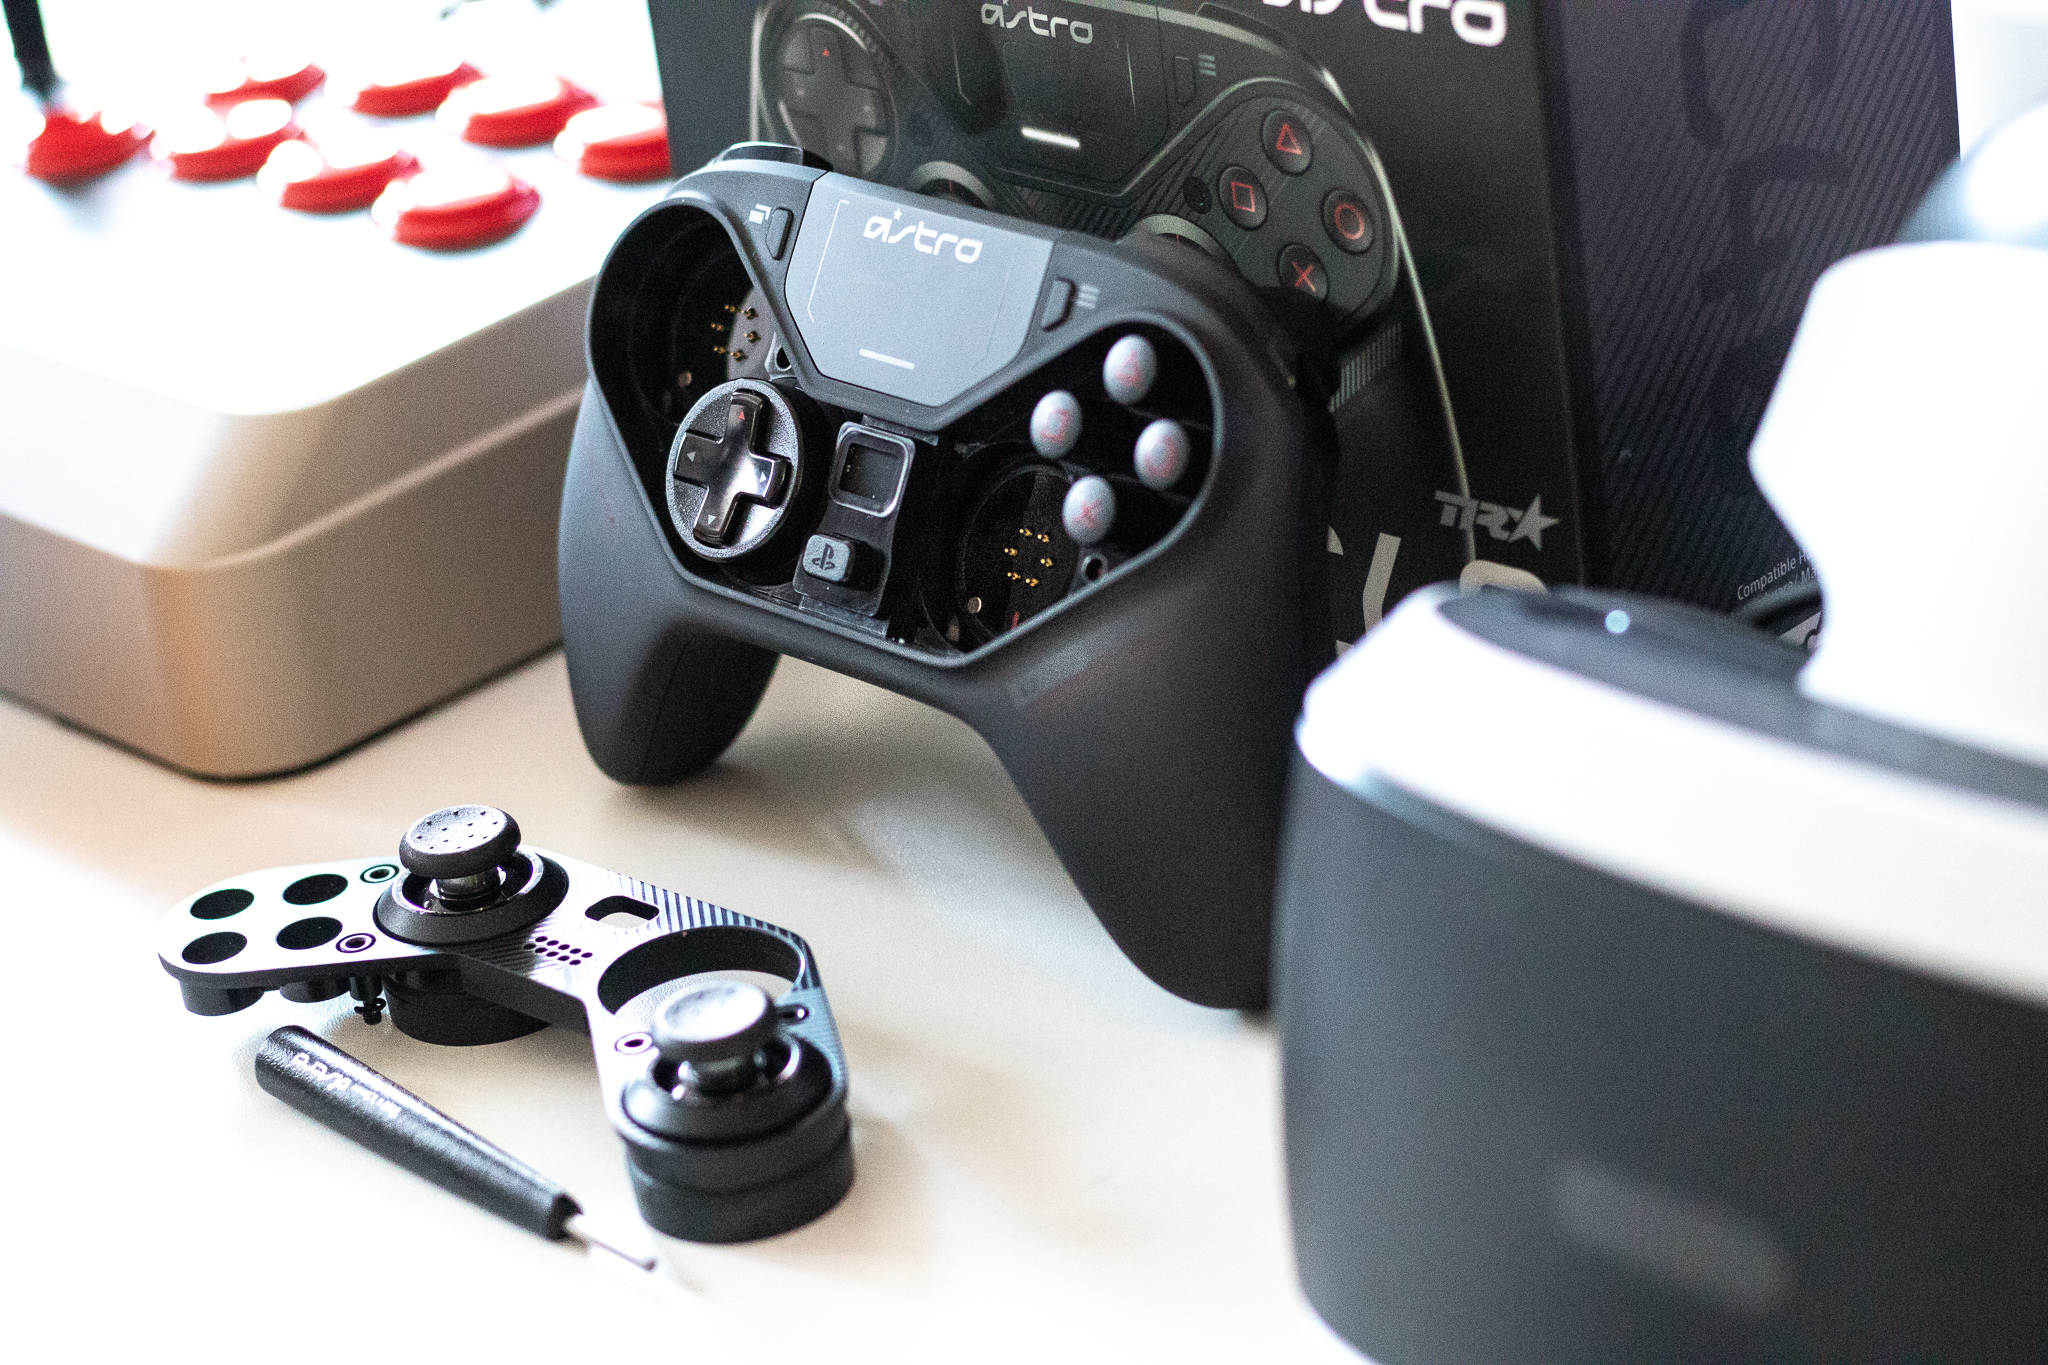 Pengaturan analog dari PlayStation atau Xbox? Kontroler Astro C40 TR menawarkan kedua pengaturan ini - tinjauan 5